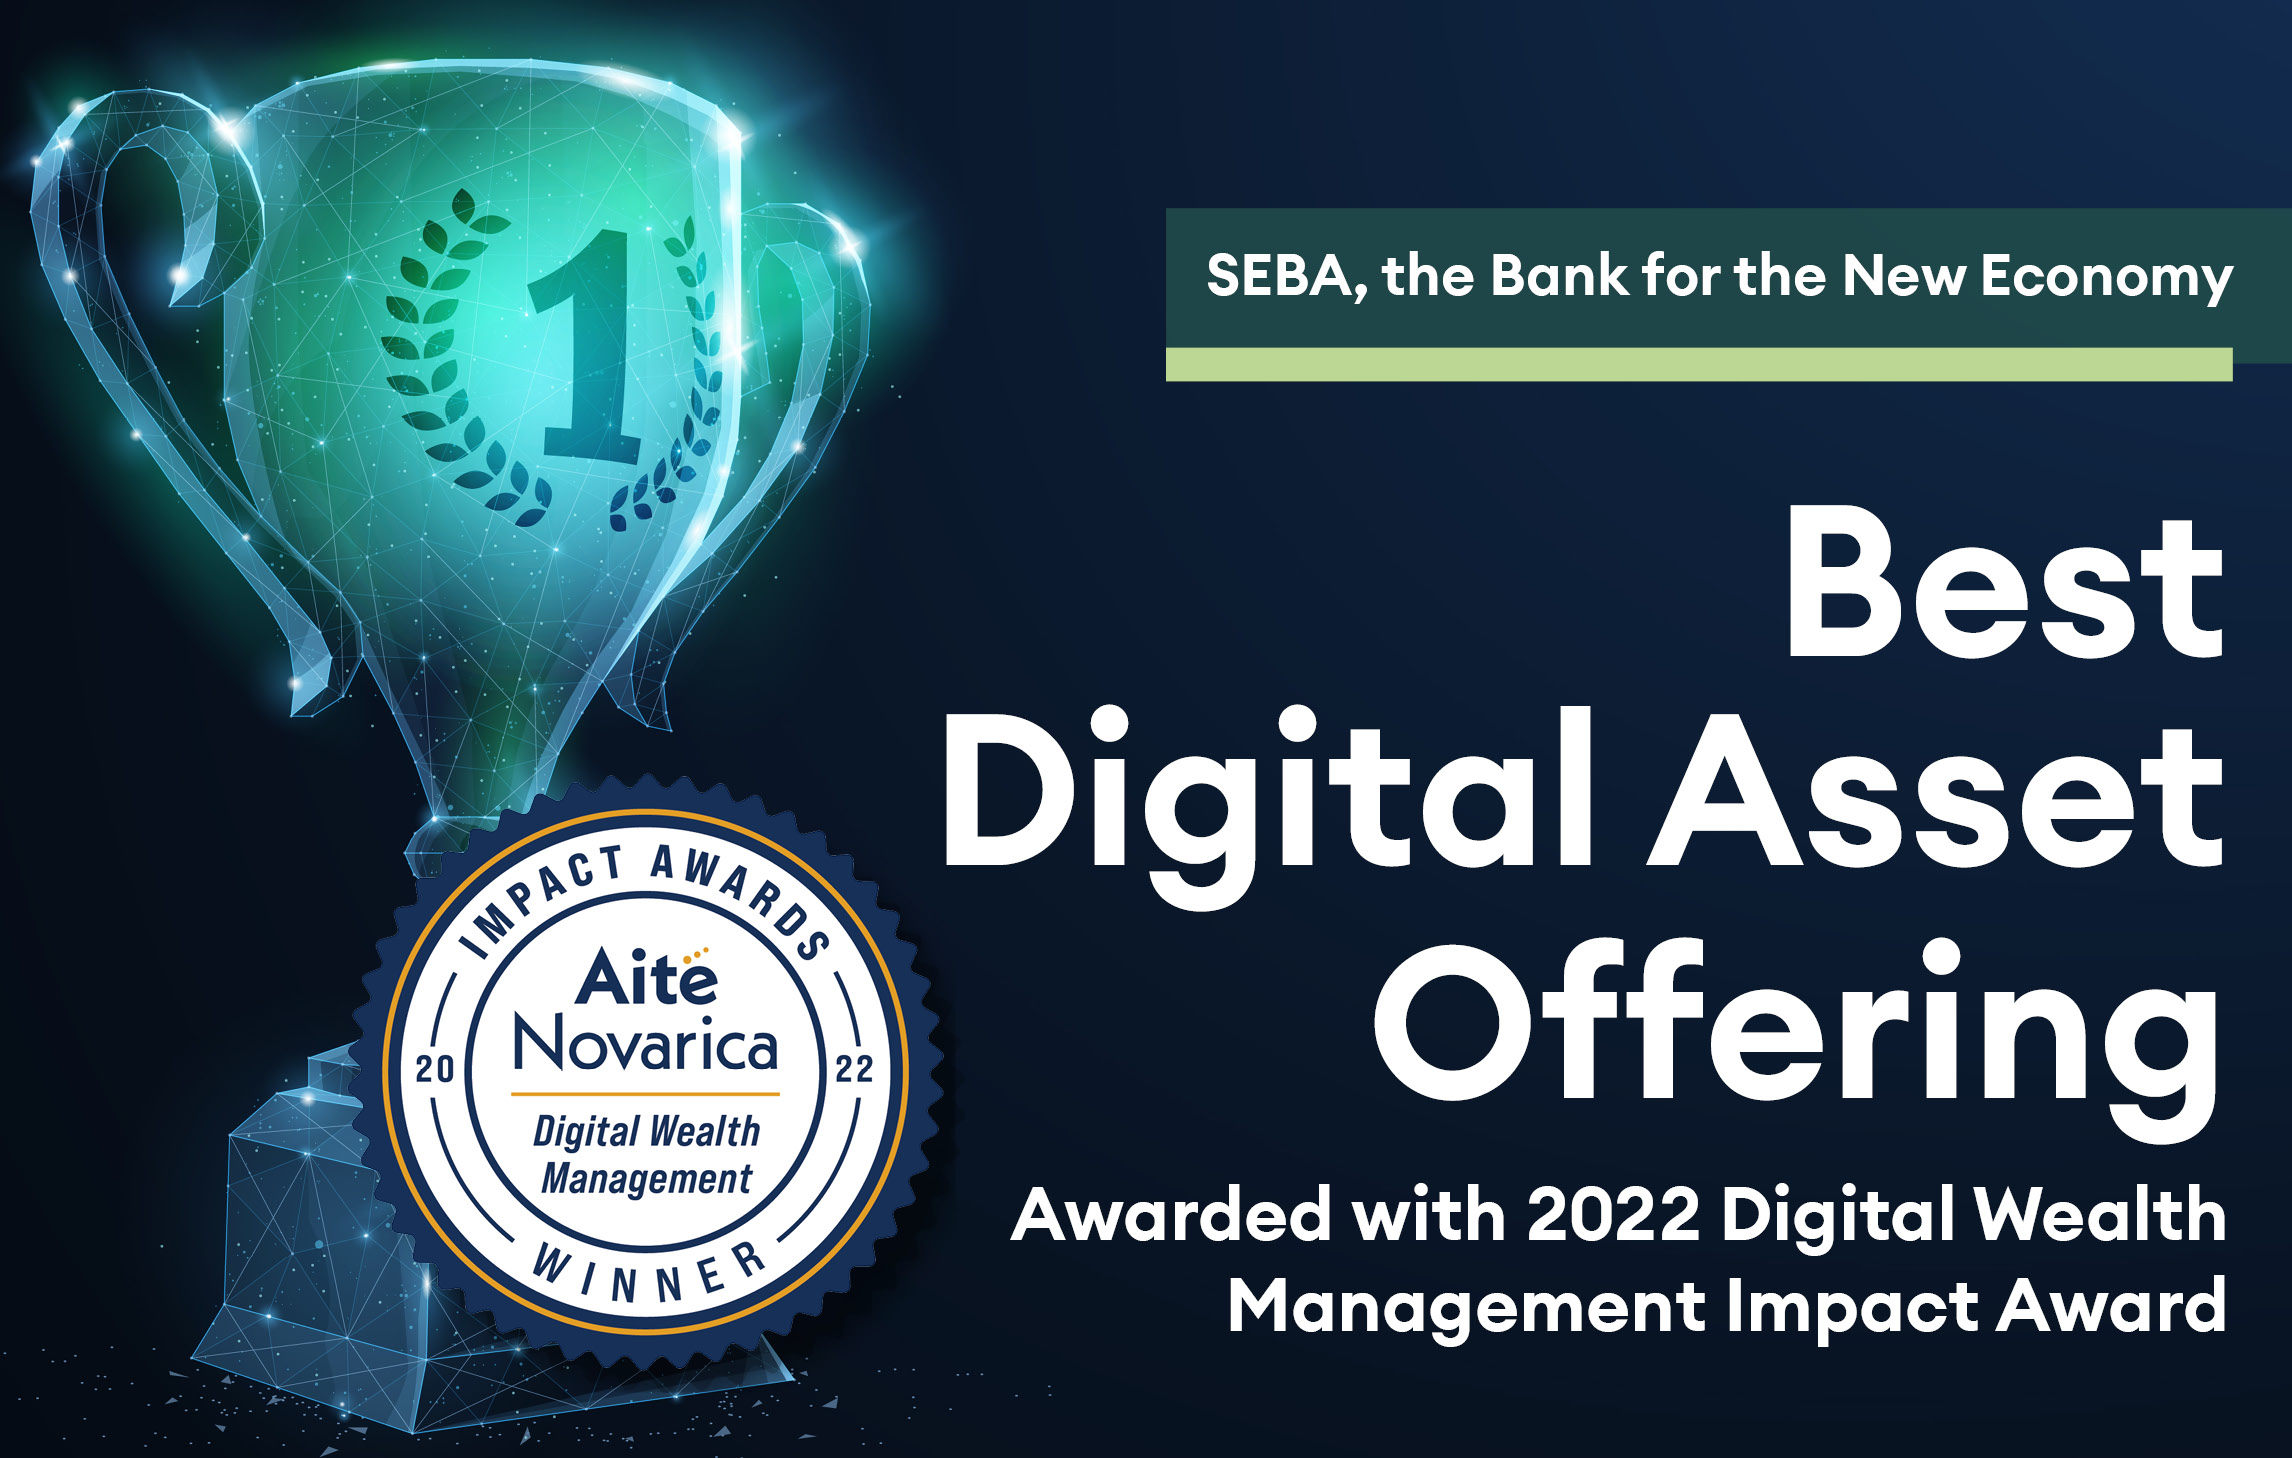 SEBA Bank Awarded Best “Digital Asset Offering” at 2022 Digital Wealth Management Impact Awards